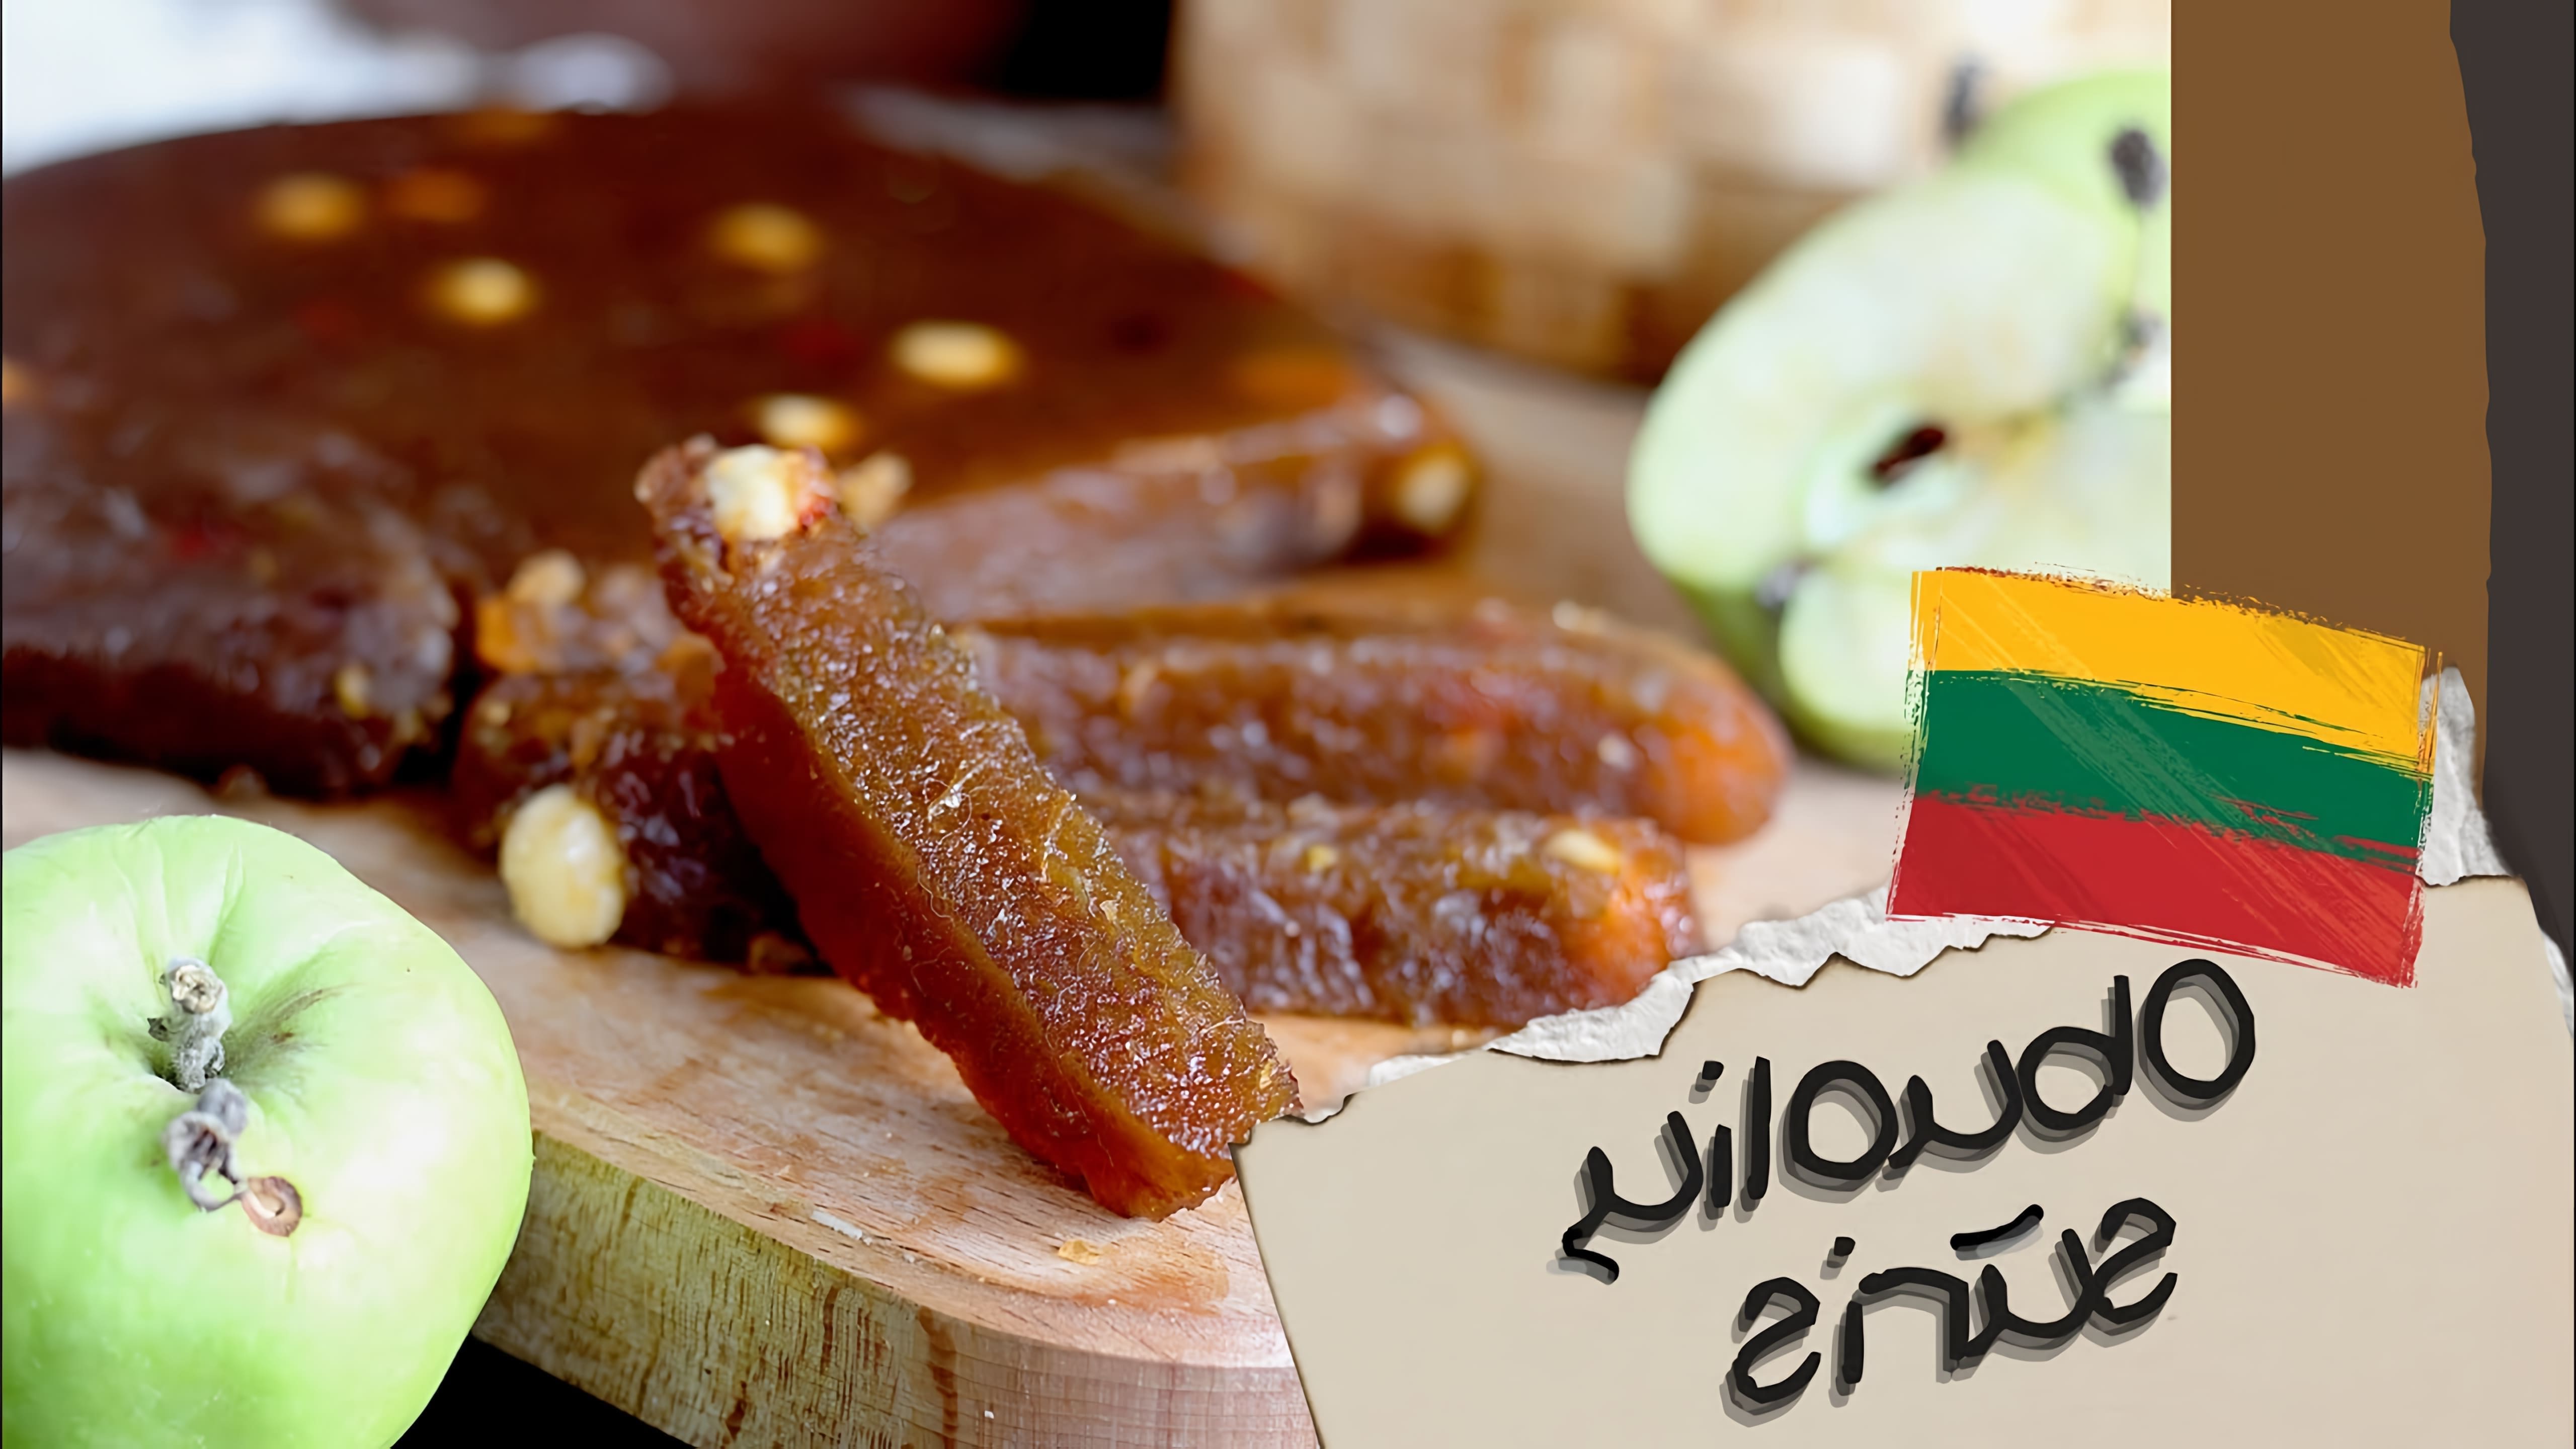 Литовская кухня известна своими традиционными блюдами, которые отражают историю и культуру страны